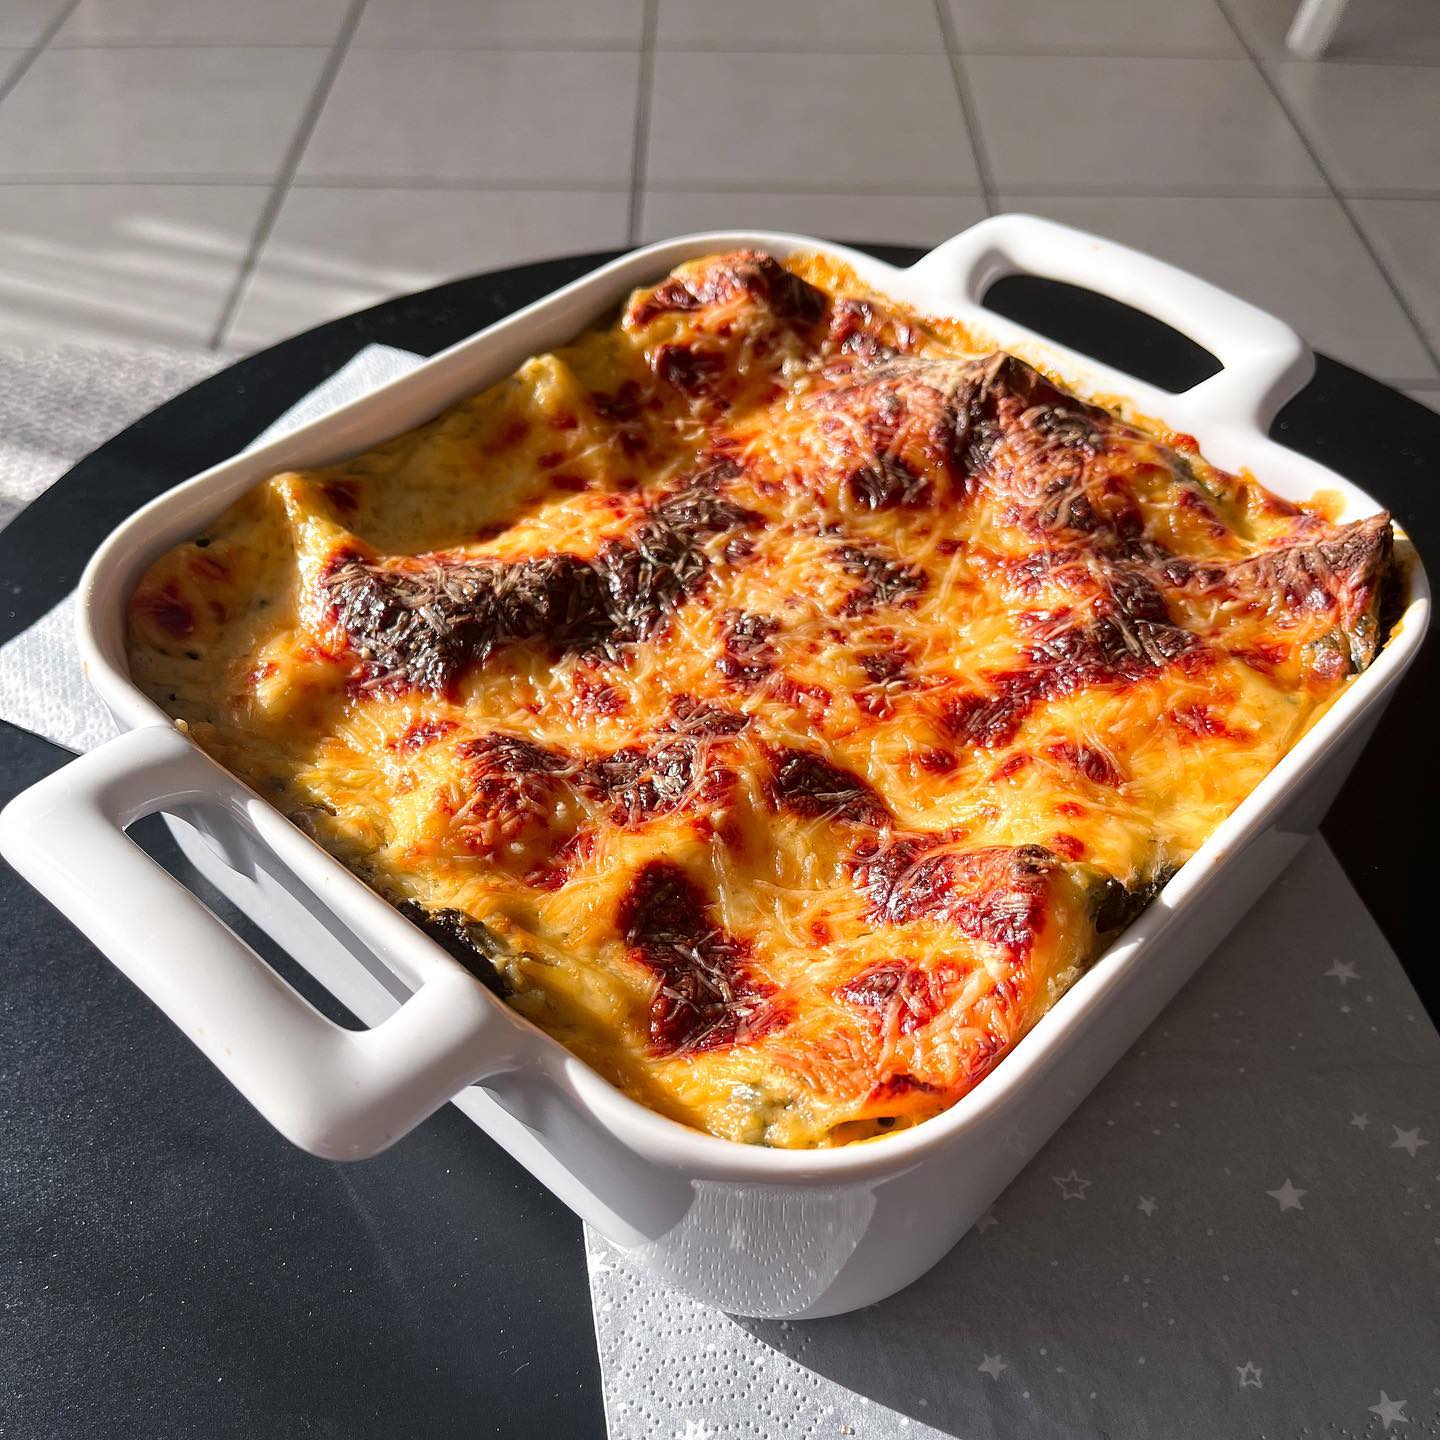 [𝙻𝚊𝚜𝚊𝚐𝚗𝚎𝚜 𝚊𝚞𝚡 𝚎́𝚙𝚒𝚗𝚊𝚛𝚍𝚜 🌿]

Après les lasagnes bolognaise, les lasagnes aux épinards 😊
Je vous mets la recette prochainement sur le blog 🤩

————————————————————

#yummy #foodporn #foodlover #food #foodie #blogolyon #blogcuisine #lyon #igerslyon #pornfood #restolyon  #foodporn #recette #recettegourmande #lasagnes #italianfood #cuisinemoi